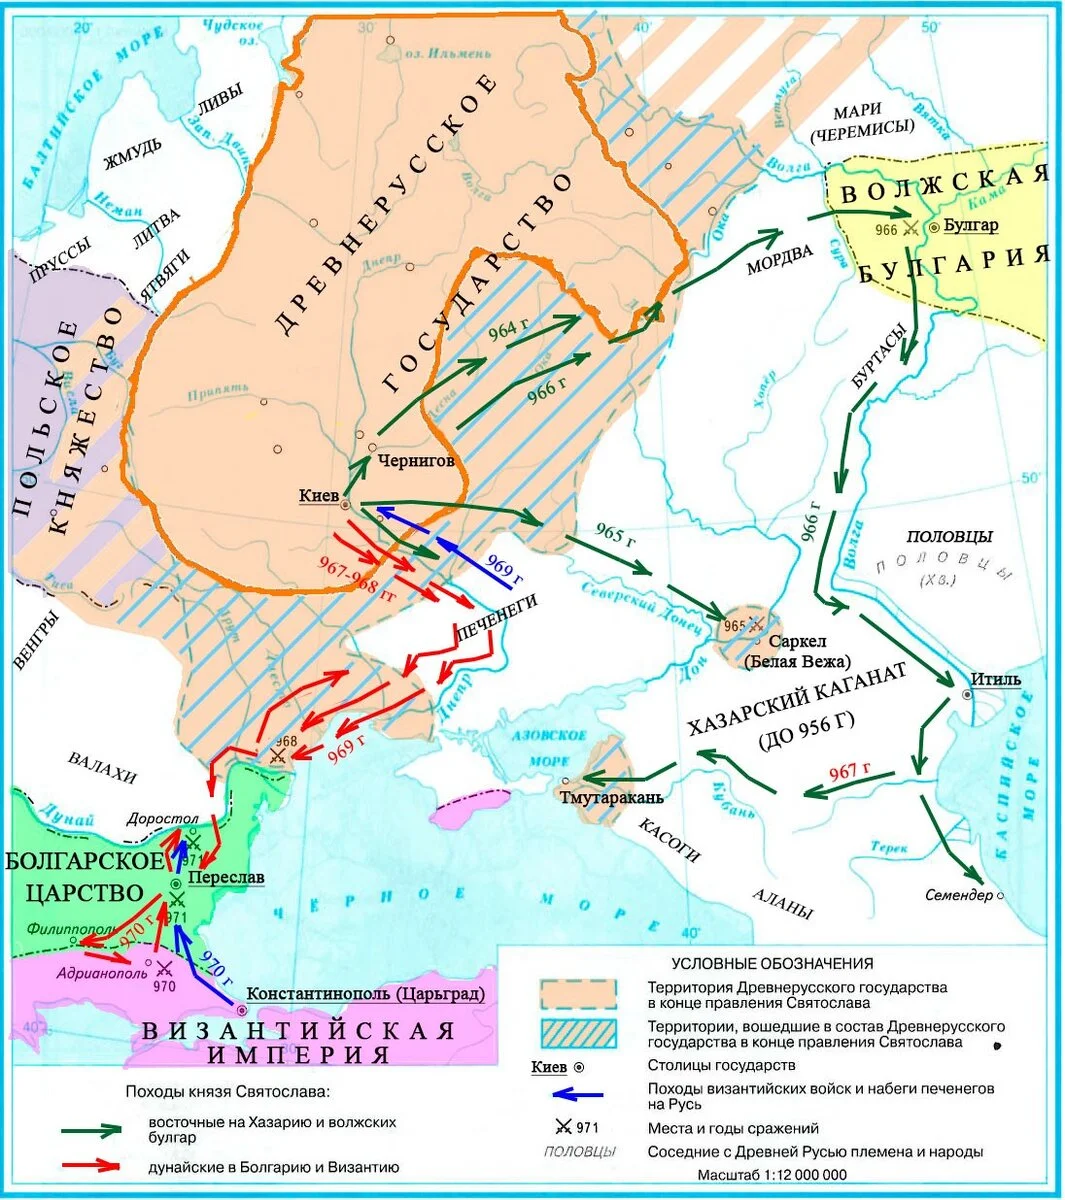 Война с Византией 970–971 гг.